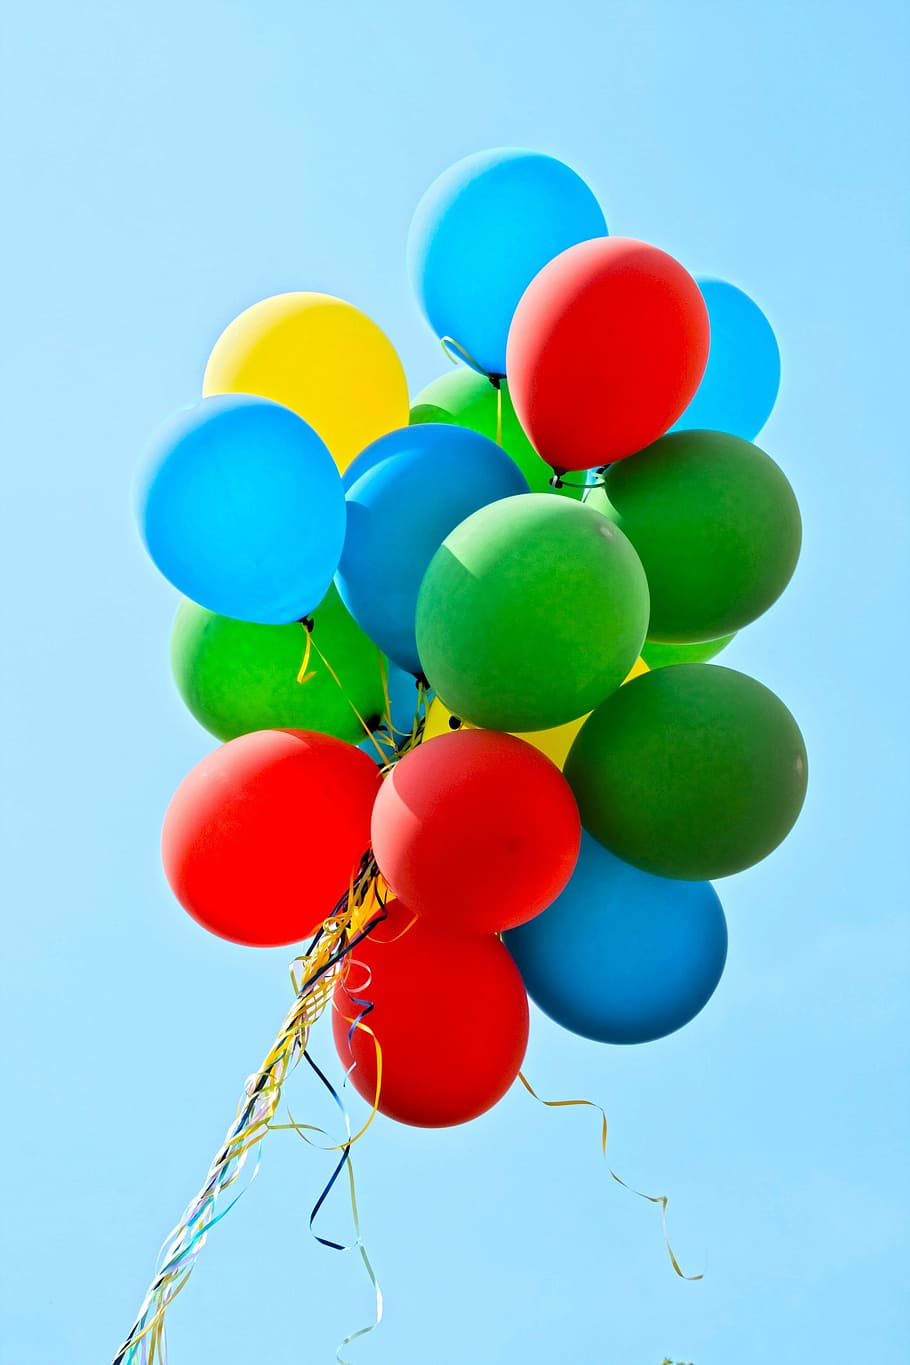 verde, azul, rojo, amarillo, globos, fiesta, colorido, decoración, cumpleaños infantiles, diversión